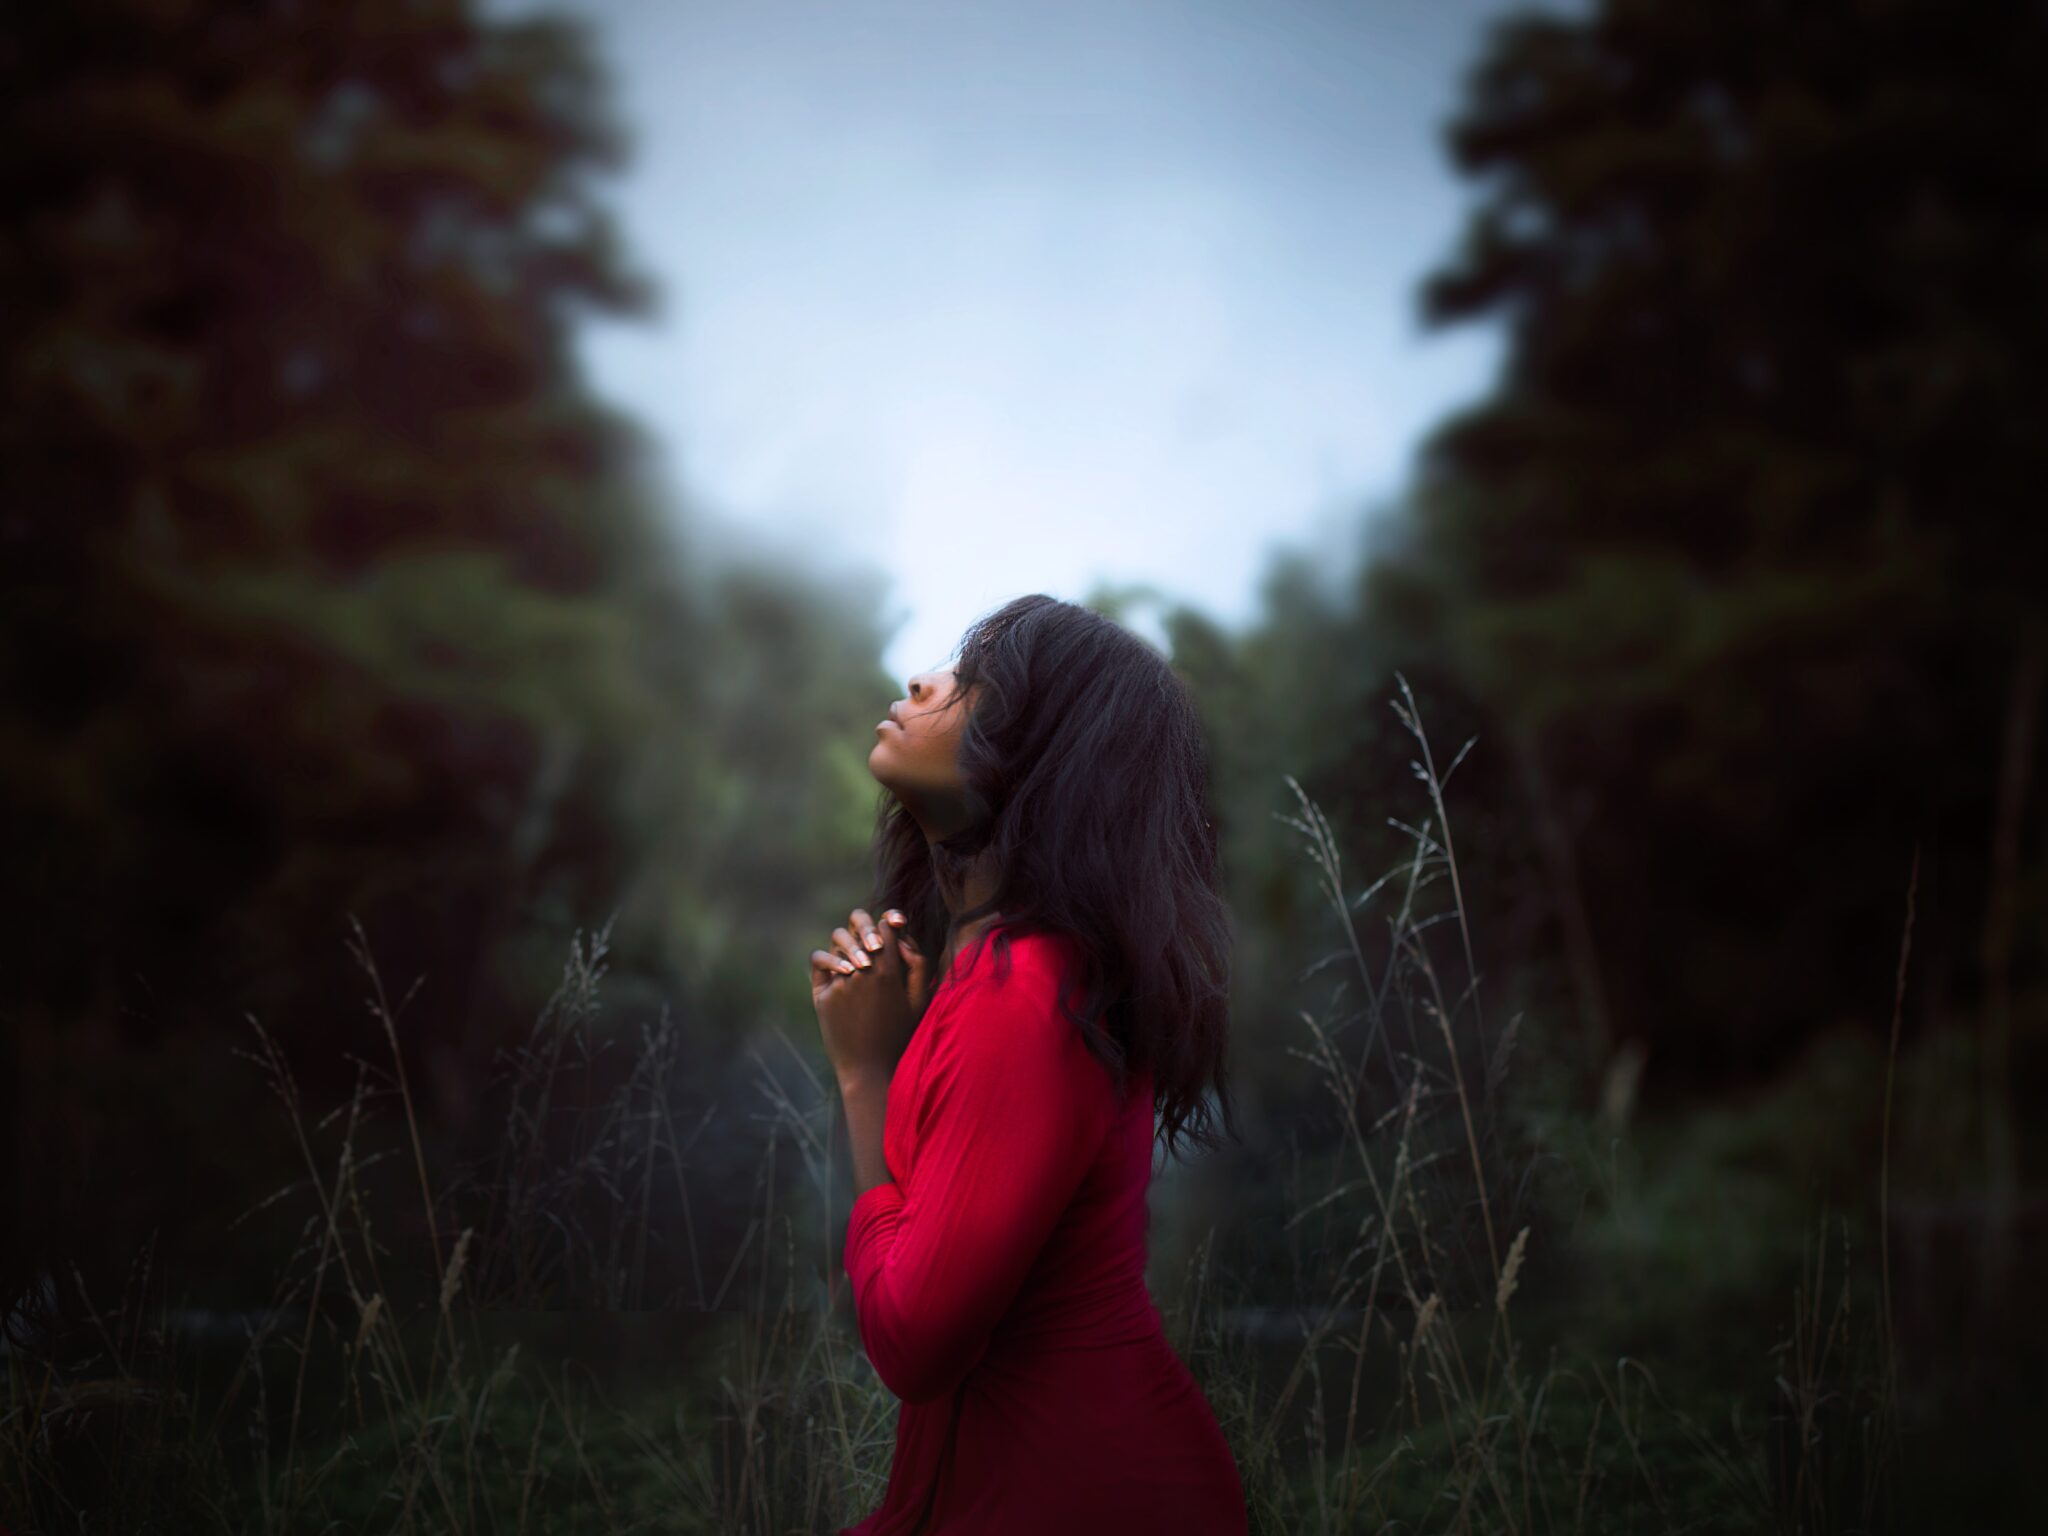 Woman in red shirt praying